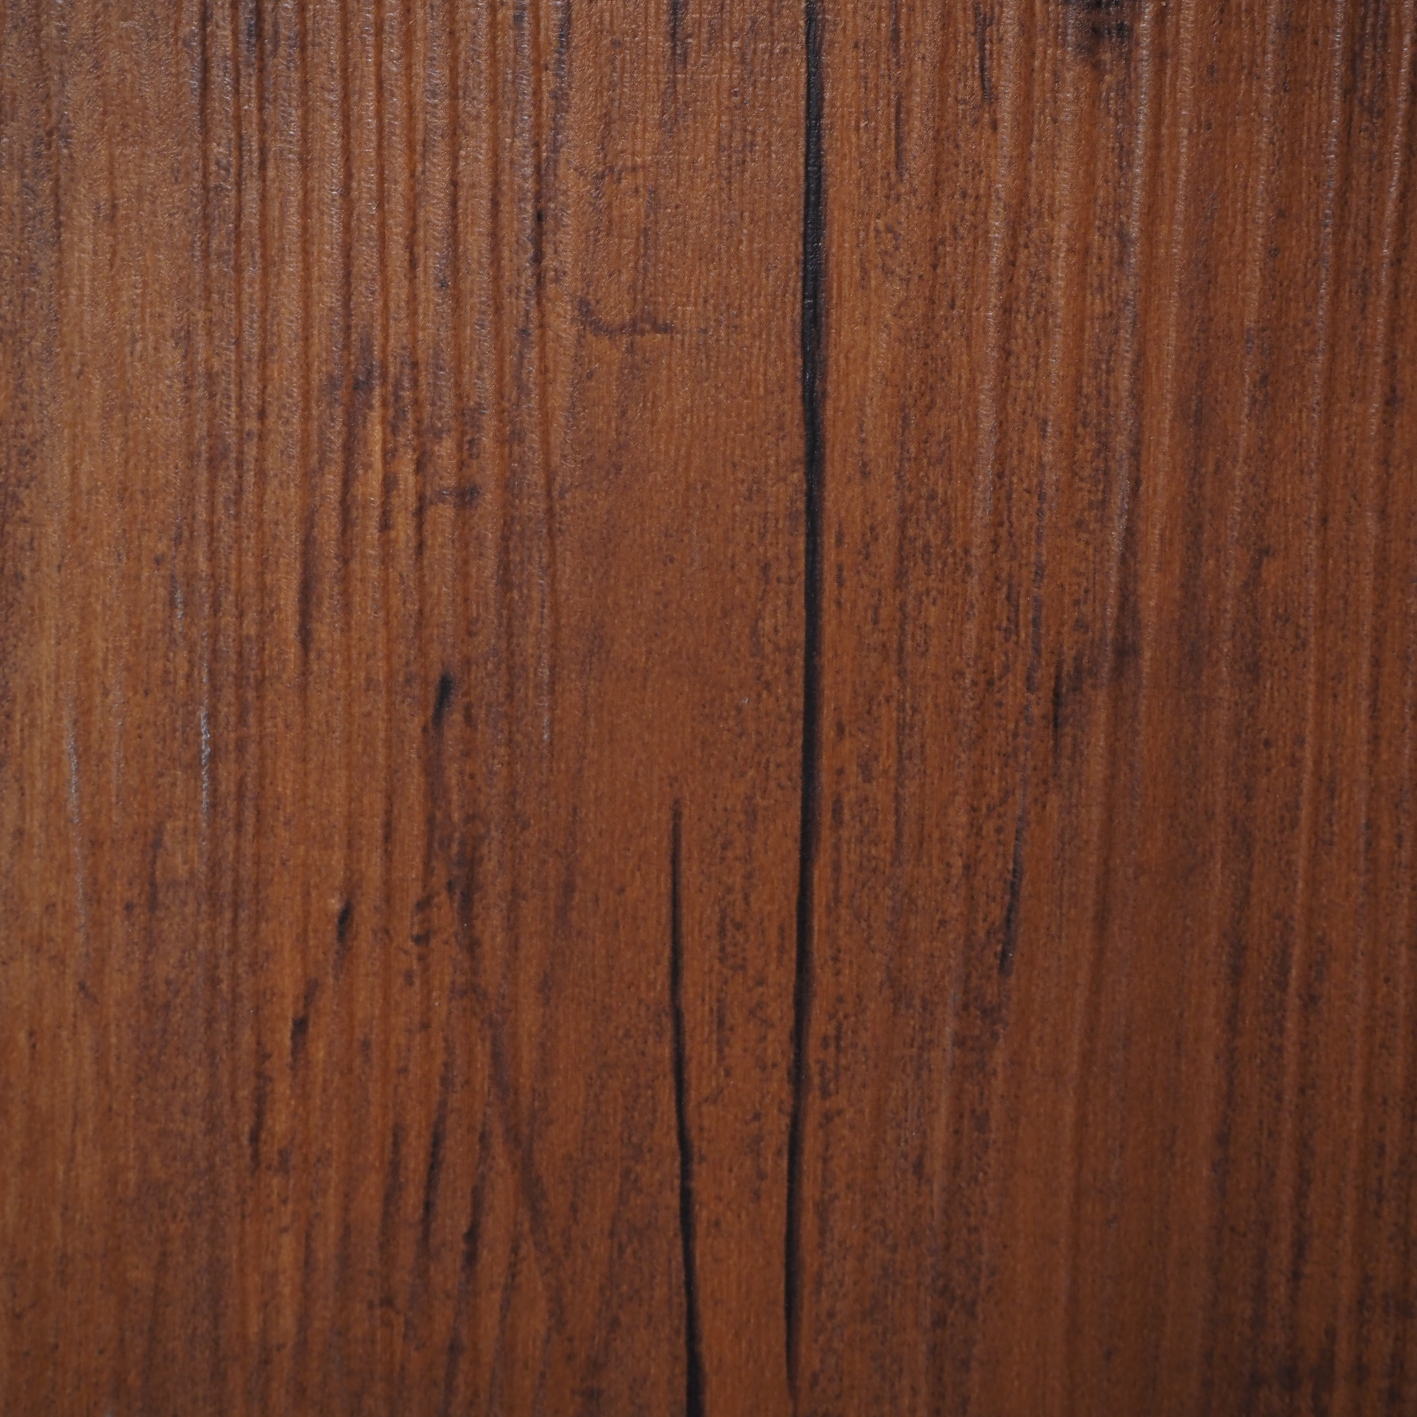 Luxury vinyl flooring by Adore - Rustic oak (4.89 m2)